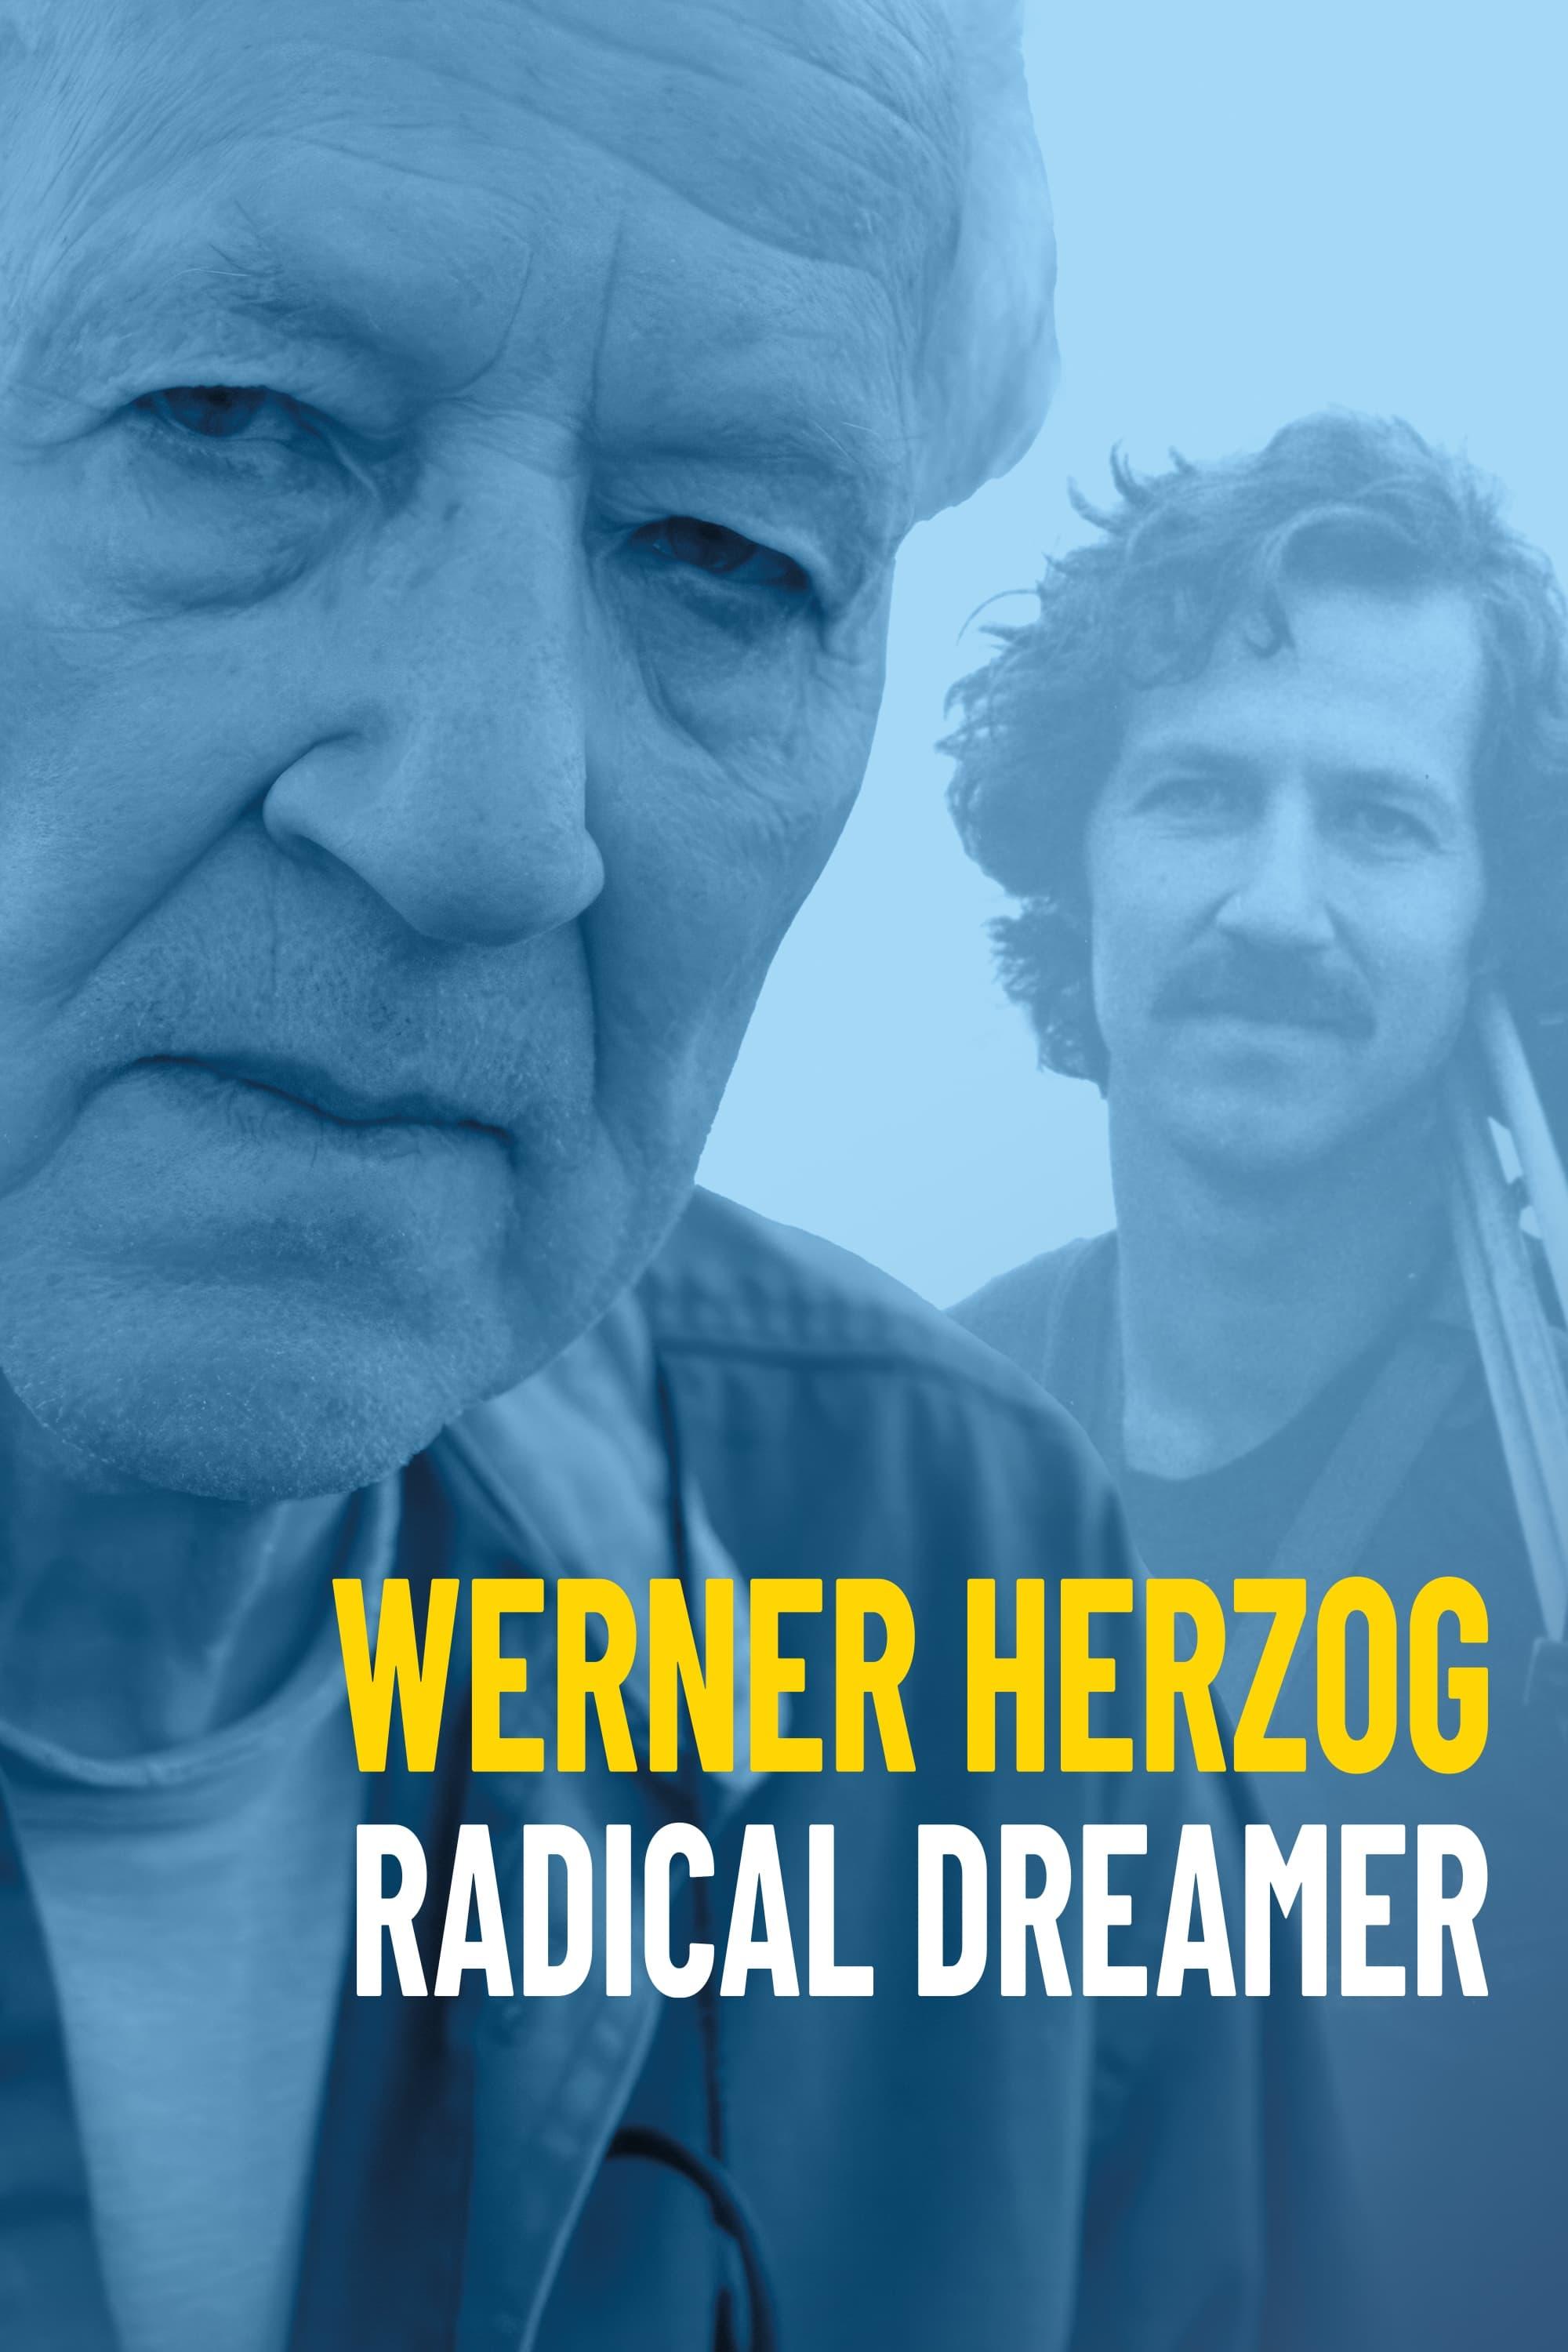 Werner Herzog: Radical Dreamer poster